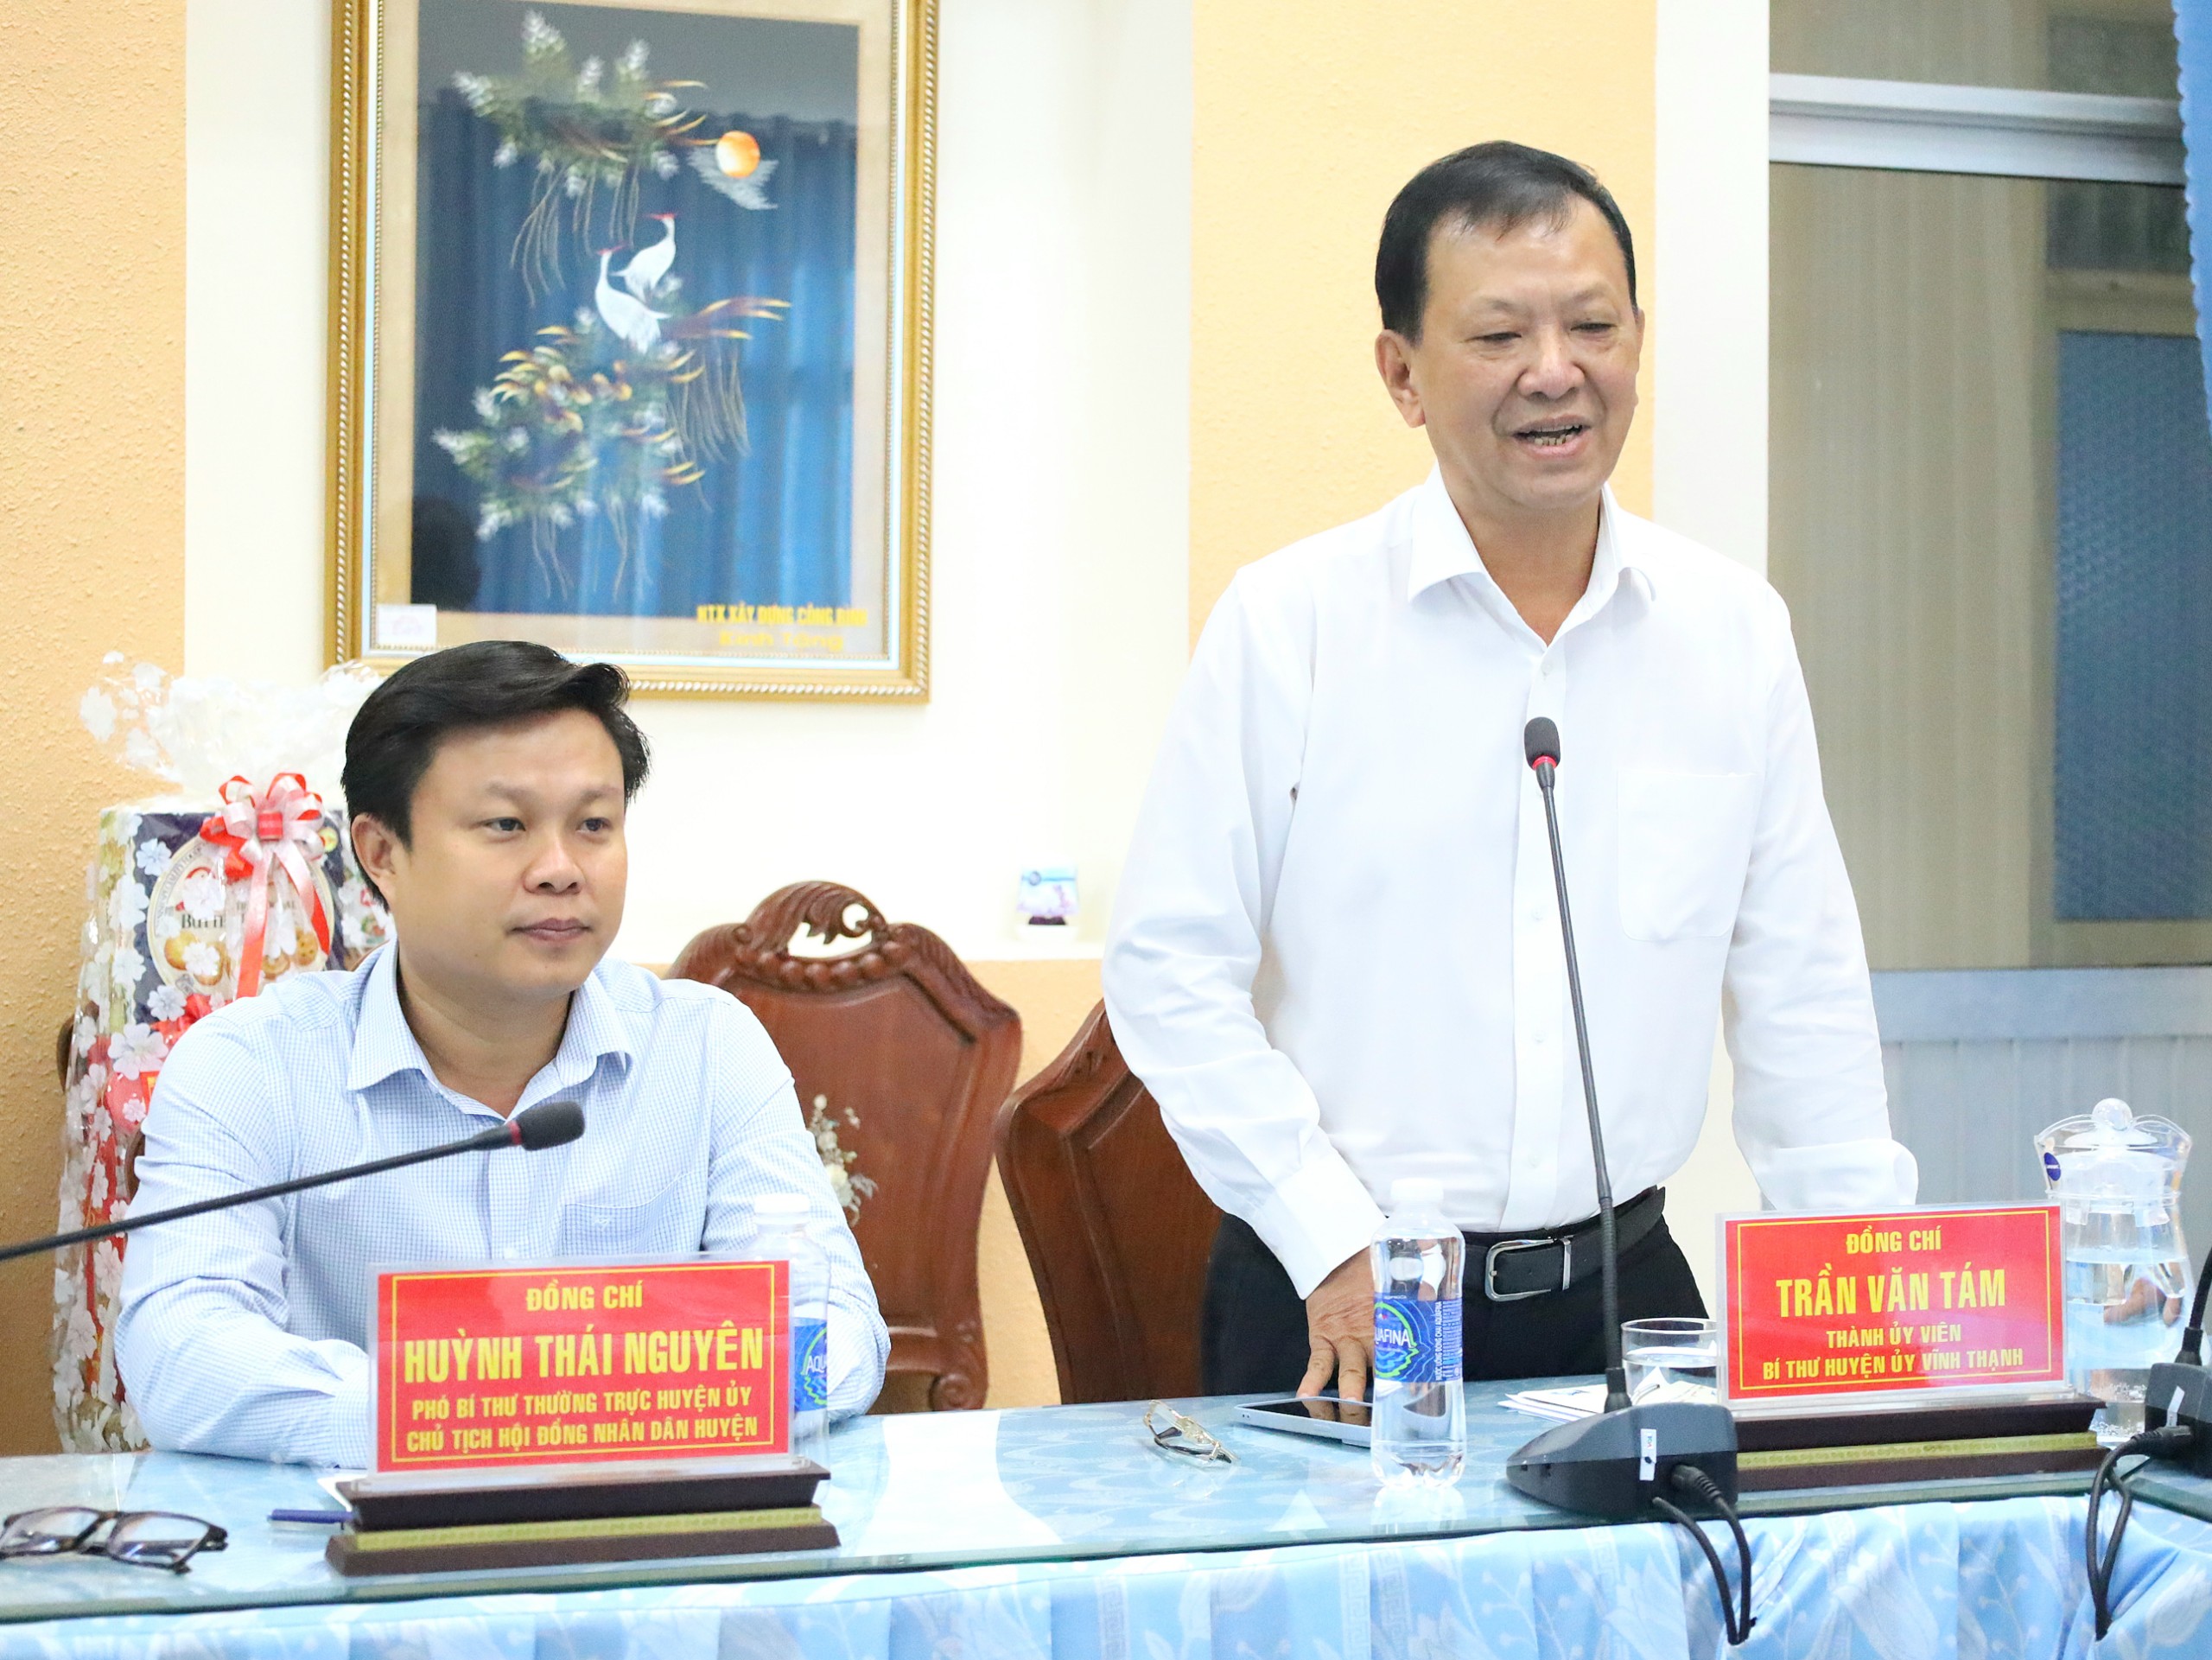 Ông Trần Văn Tám - Bí thư Huyện ủy Vĩnh Thạnh phát biểu tiếp thu ý kiến chỉ đạo.